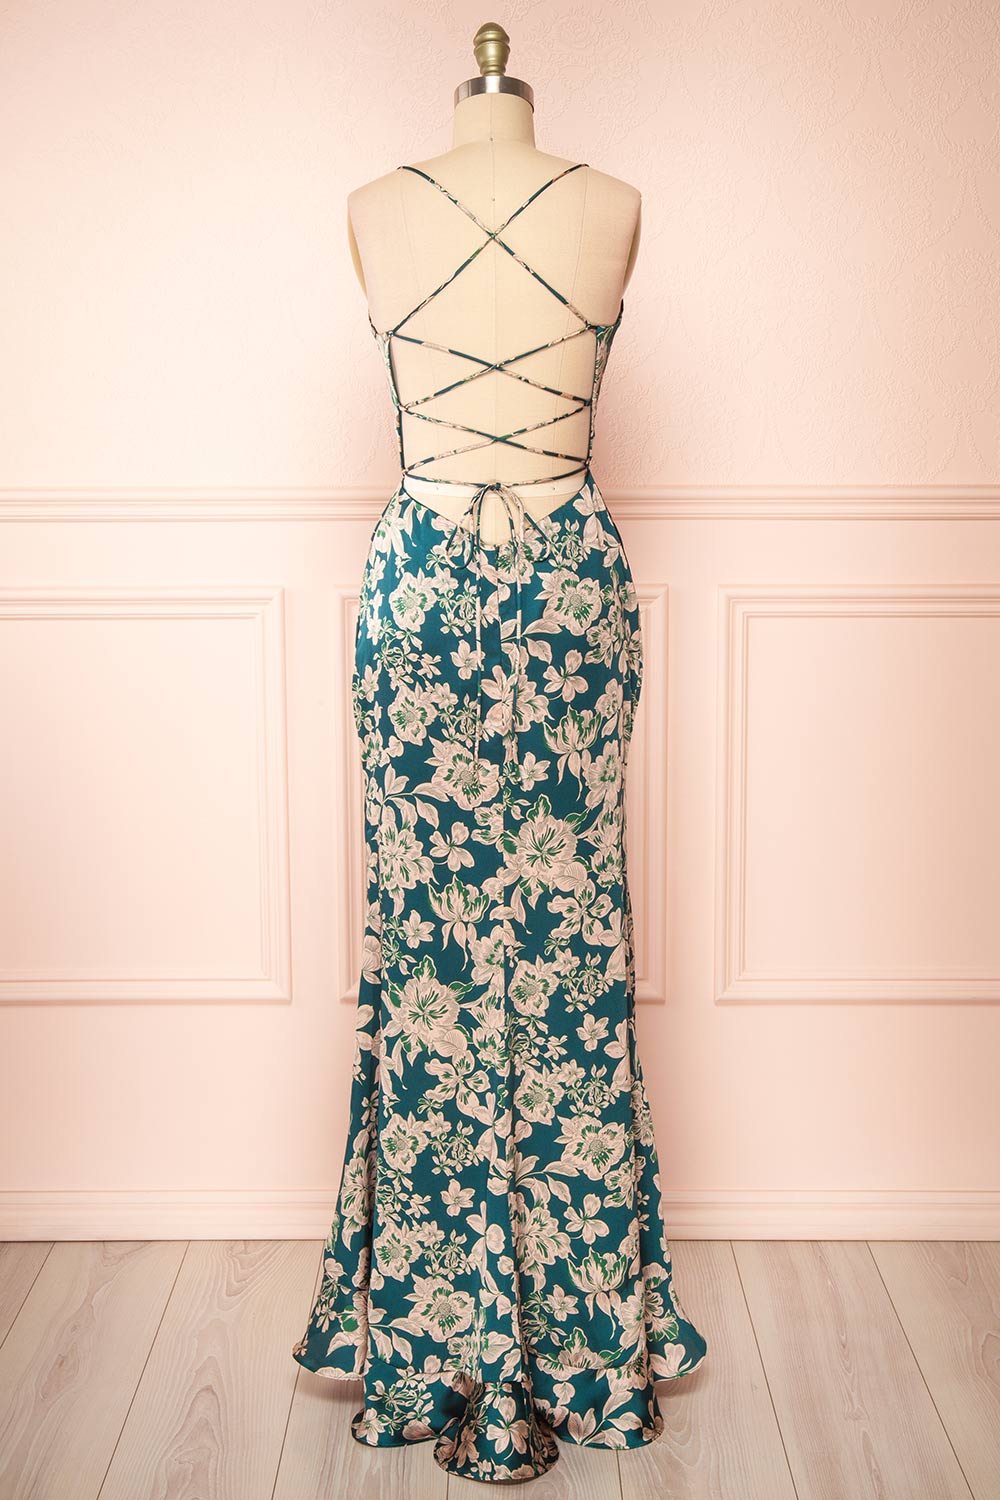 Michelle Mermaid Floral Maxi Dress w/ Slit | Boutique 1861 back view 